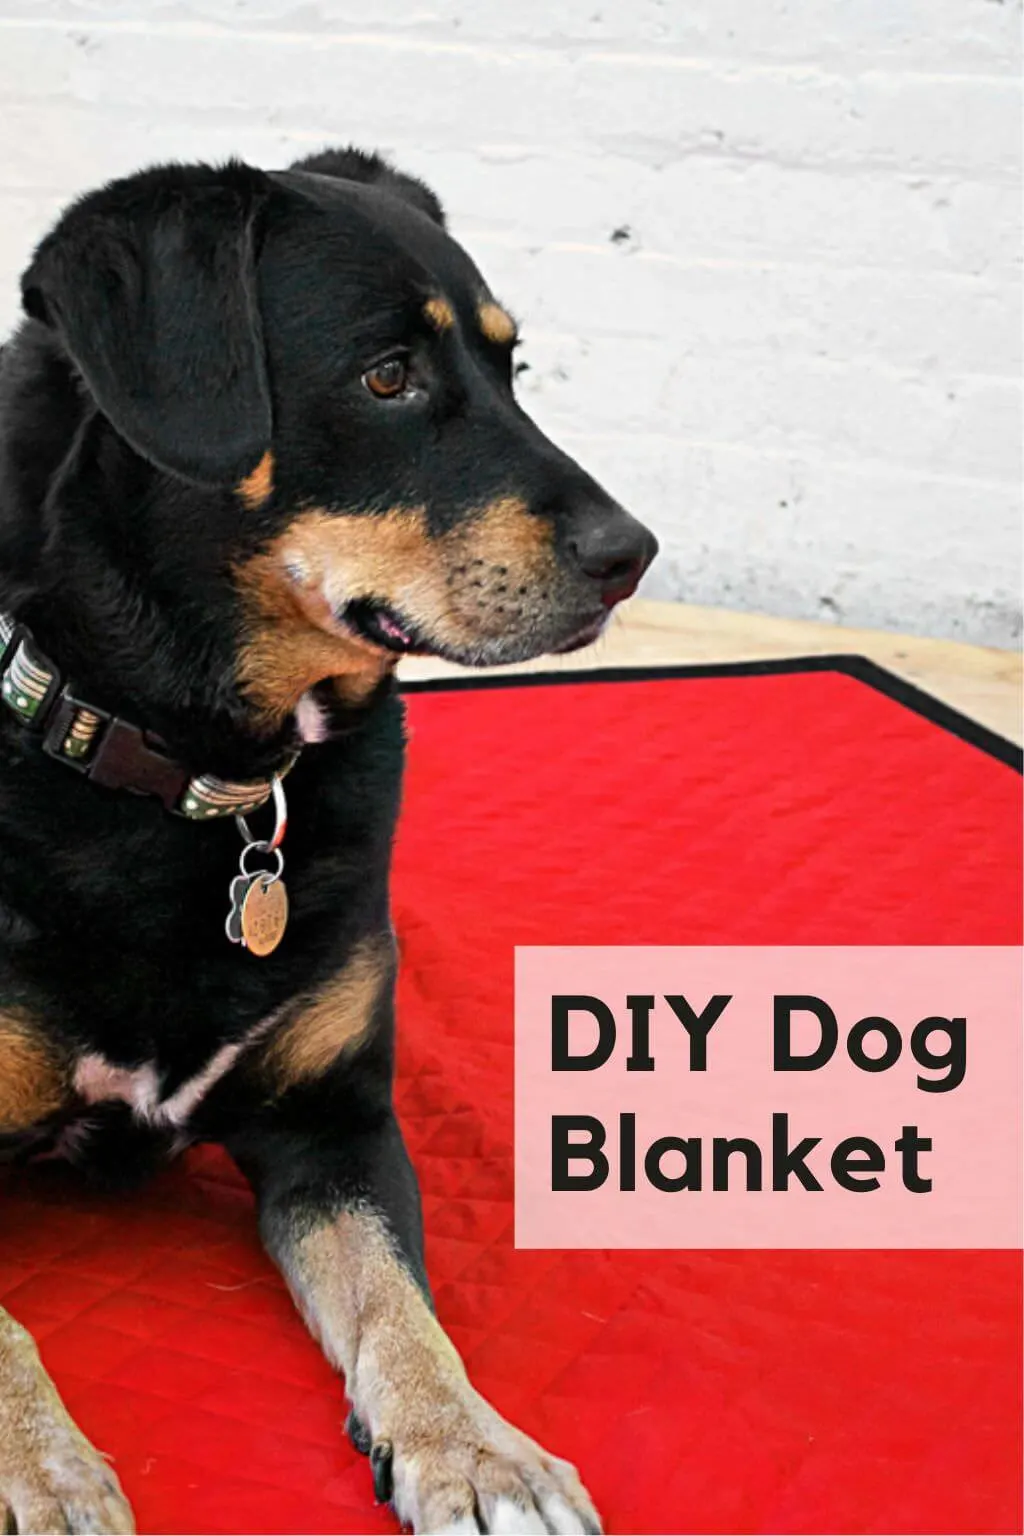 Dog sitting on a DIY dog blanket